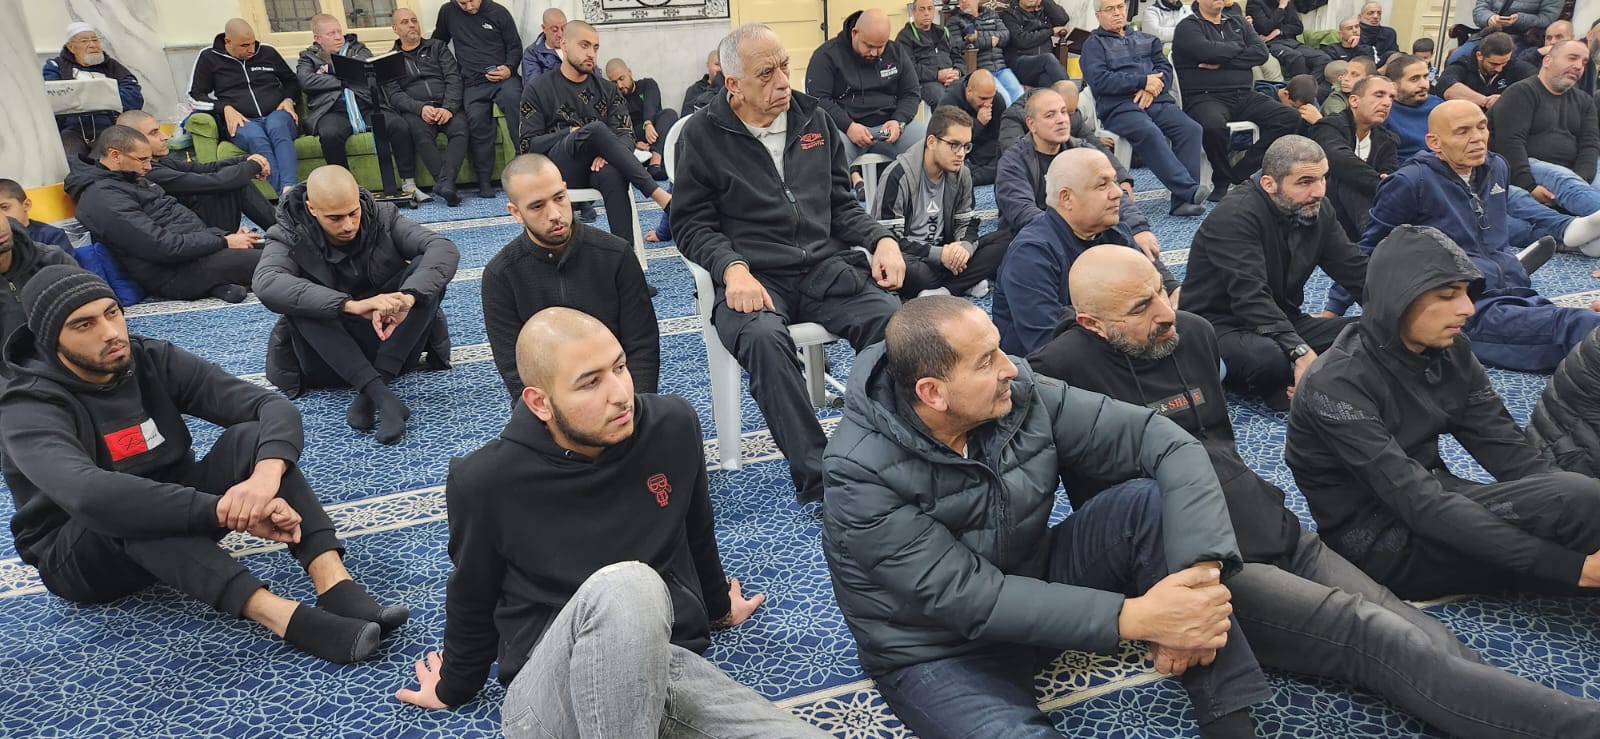 يافا: بمشاركة المئات إحياء ذكرى الإسراء والمعراج في مسجد النزهة